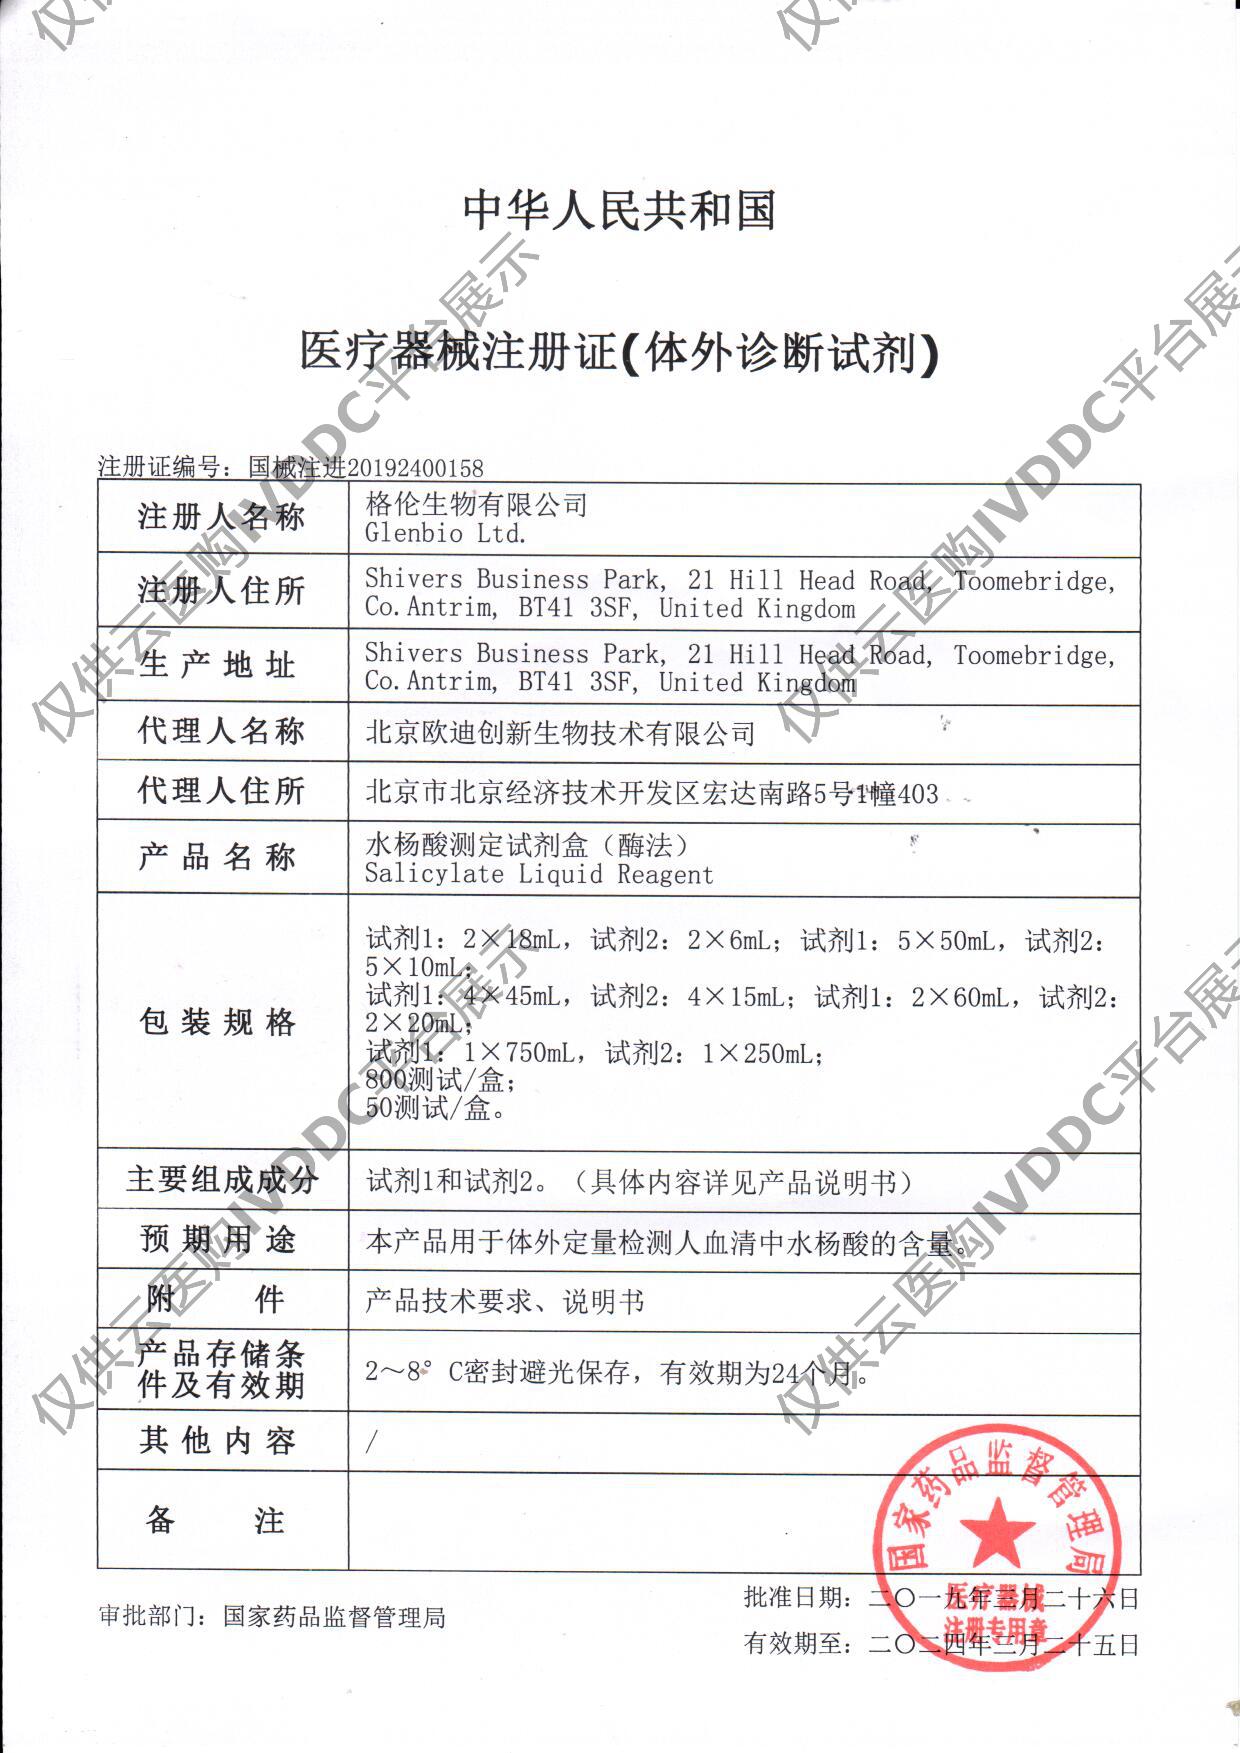 【英国】水杨酸测定试剂盒注册证